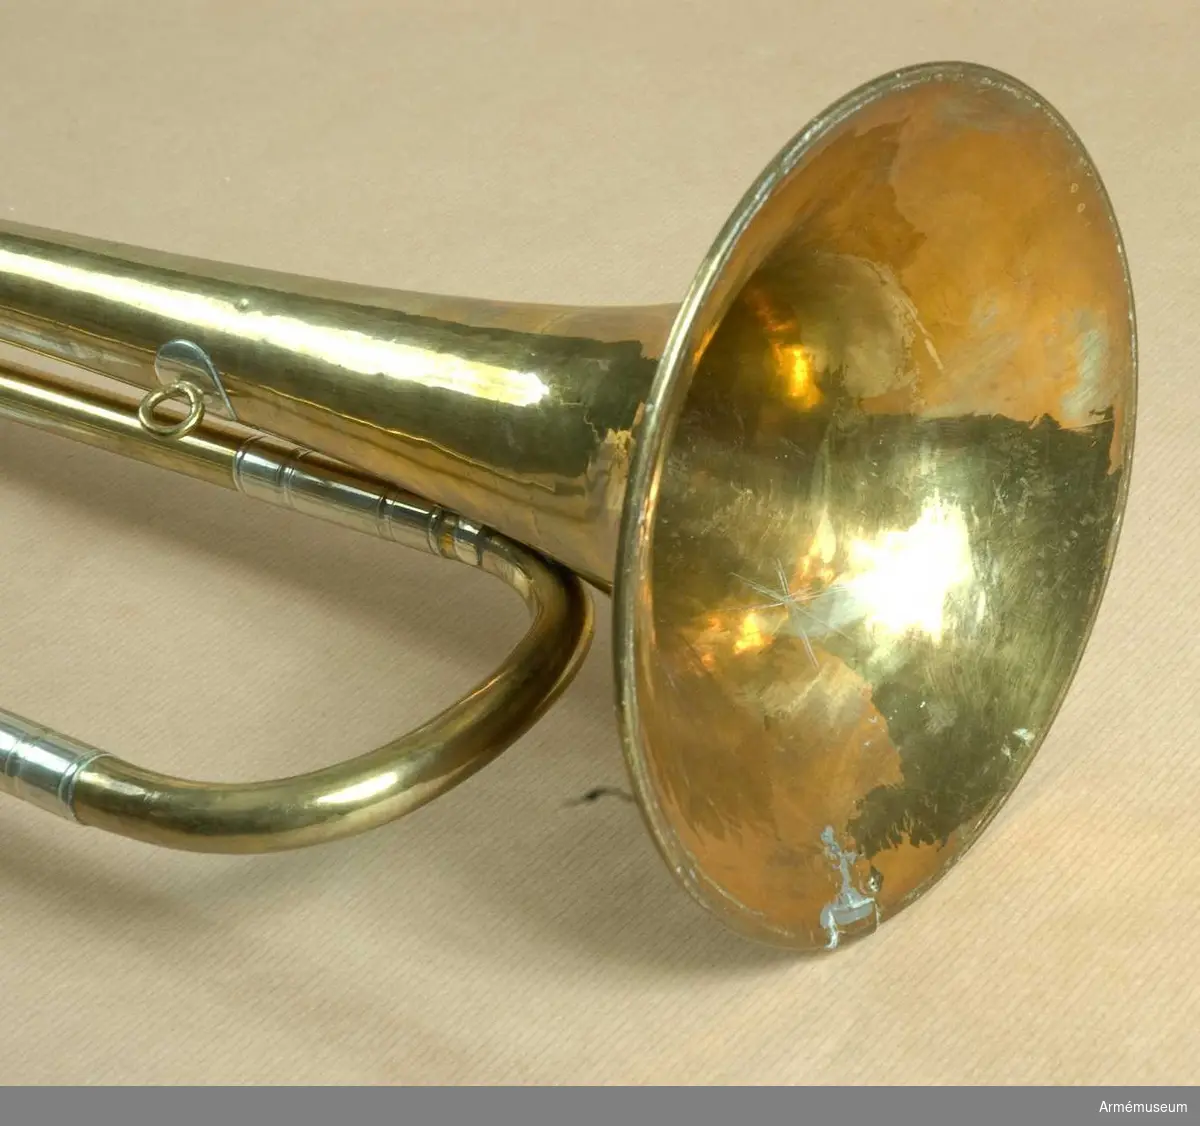 Höjd utan munstycke 69 cm, med d:o 72 cm. Av mässing och vitmetall med en vindling. Trumpeten är signerad på klockstycket Bohland & Fuchs, Graslitz - dock nästan bortputsat.